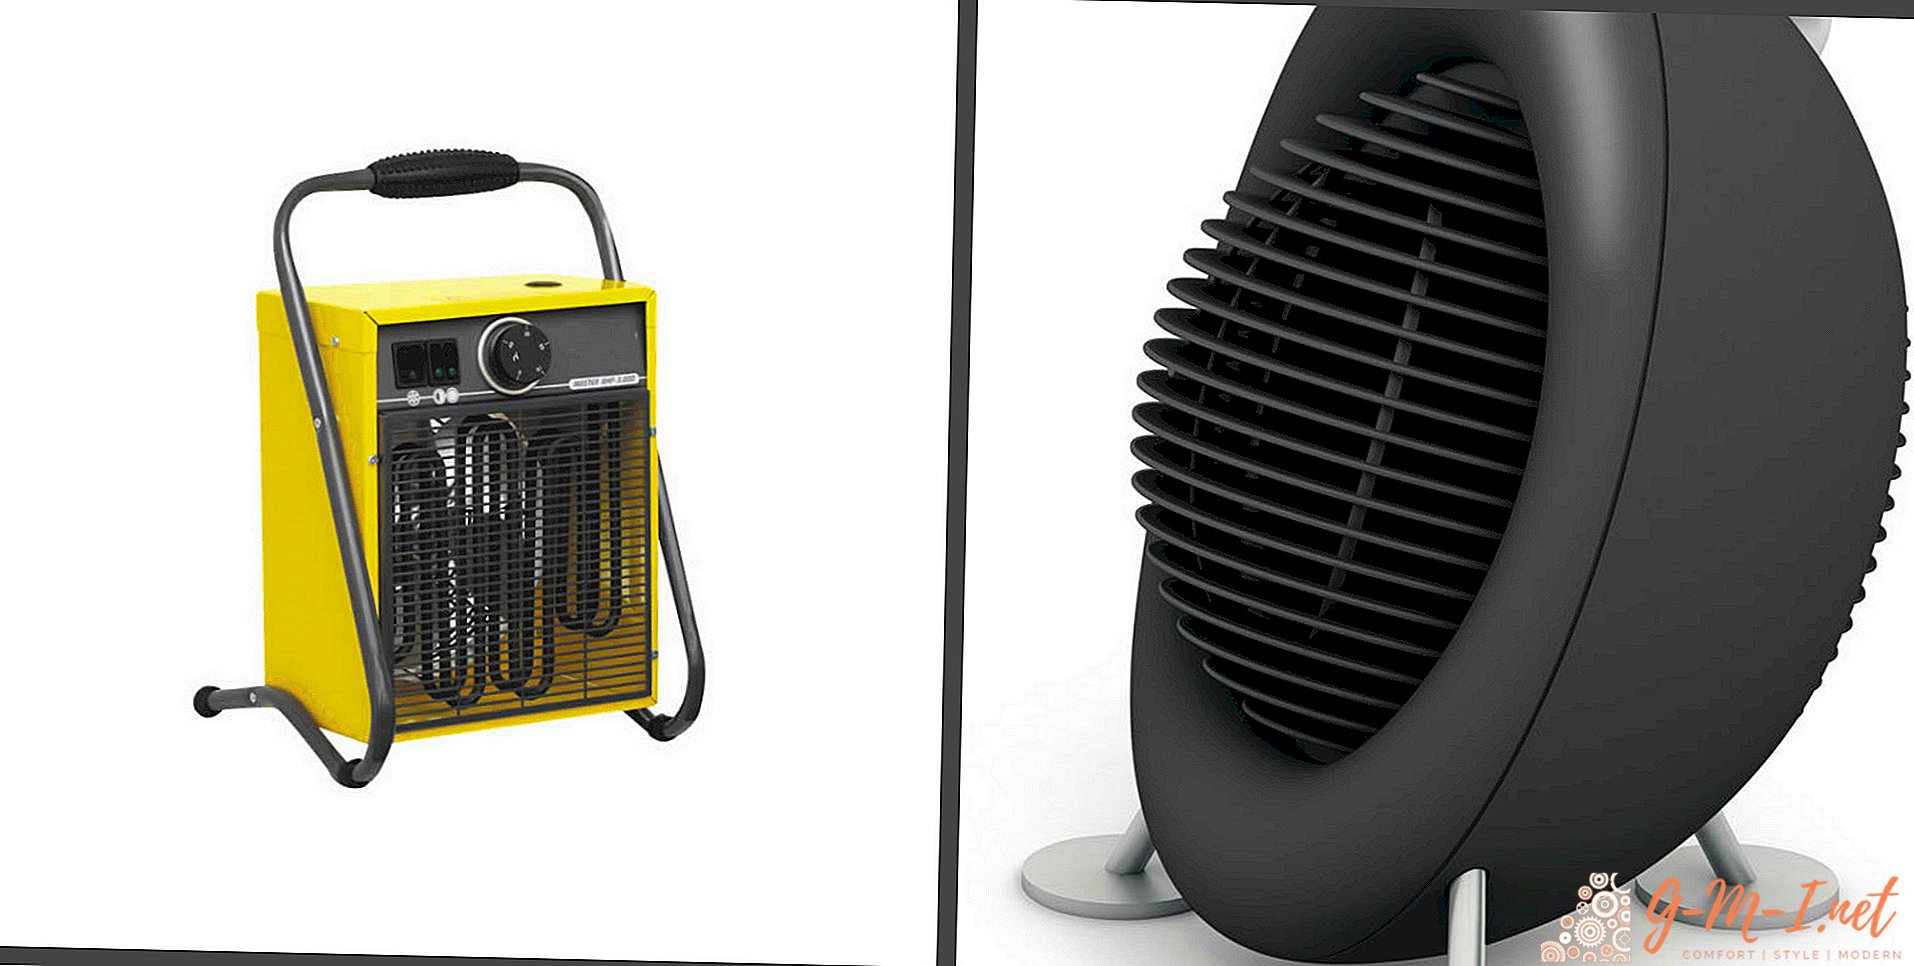 What is better fan heater or heat gun